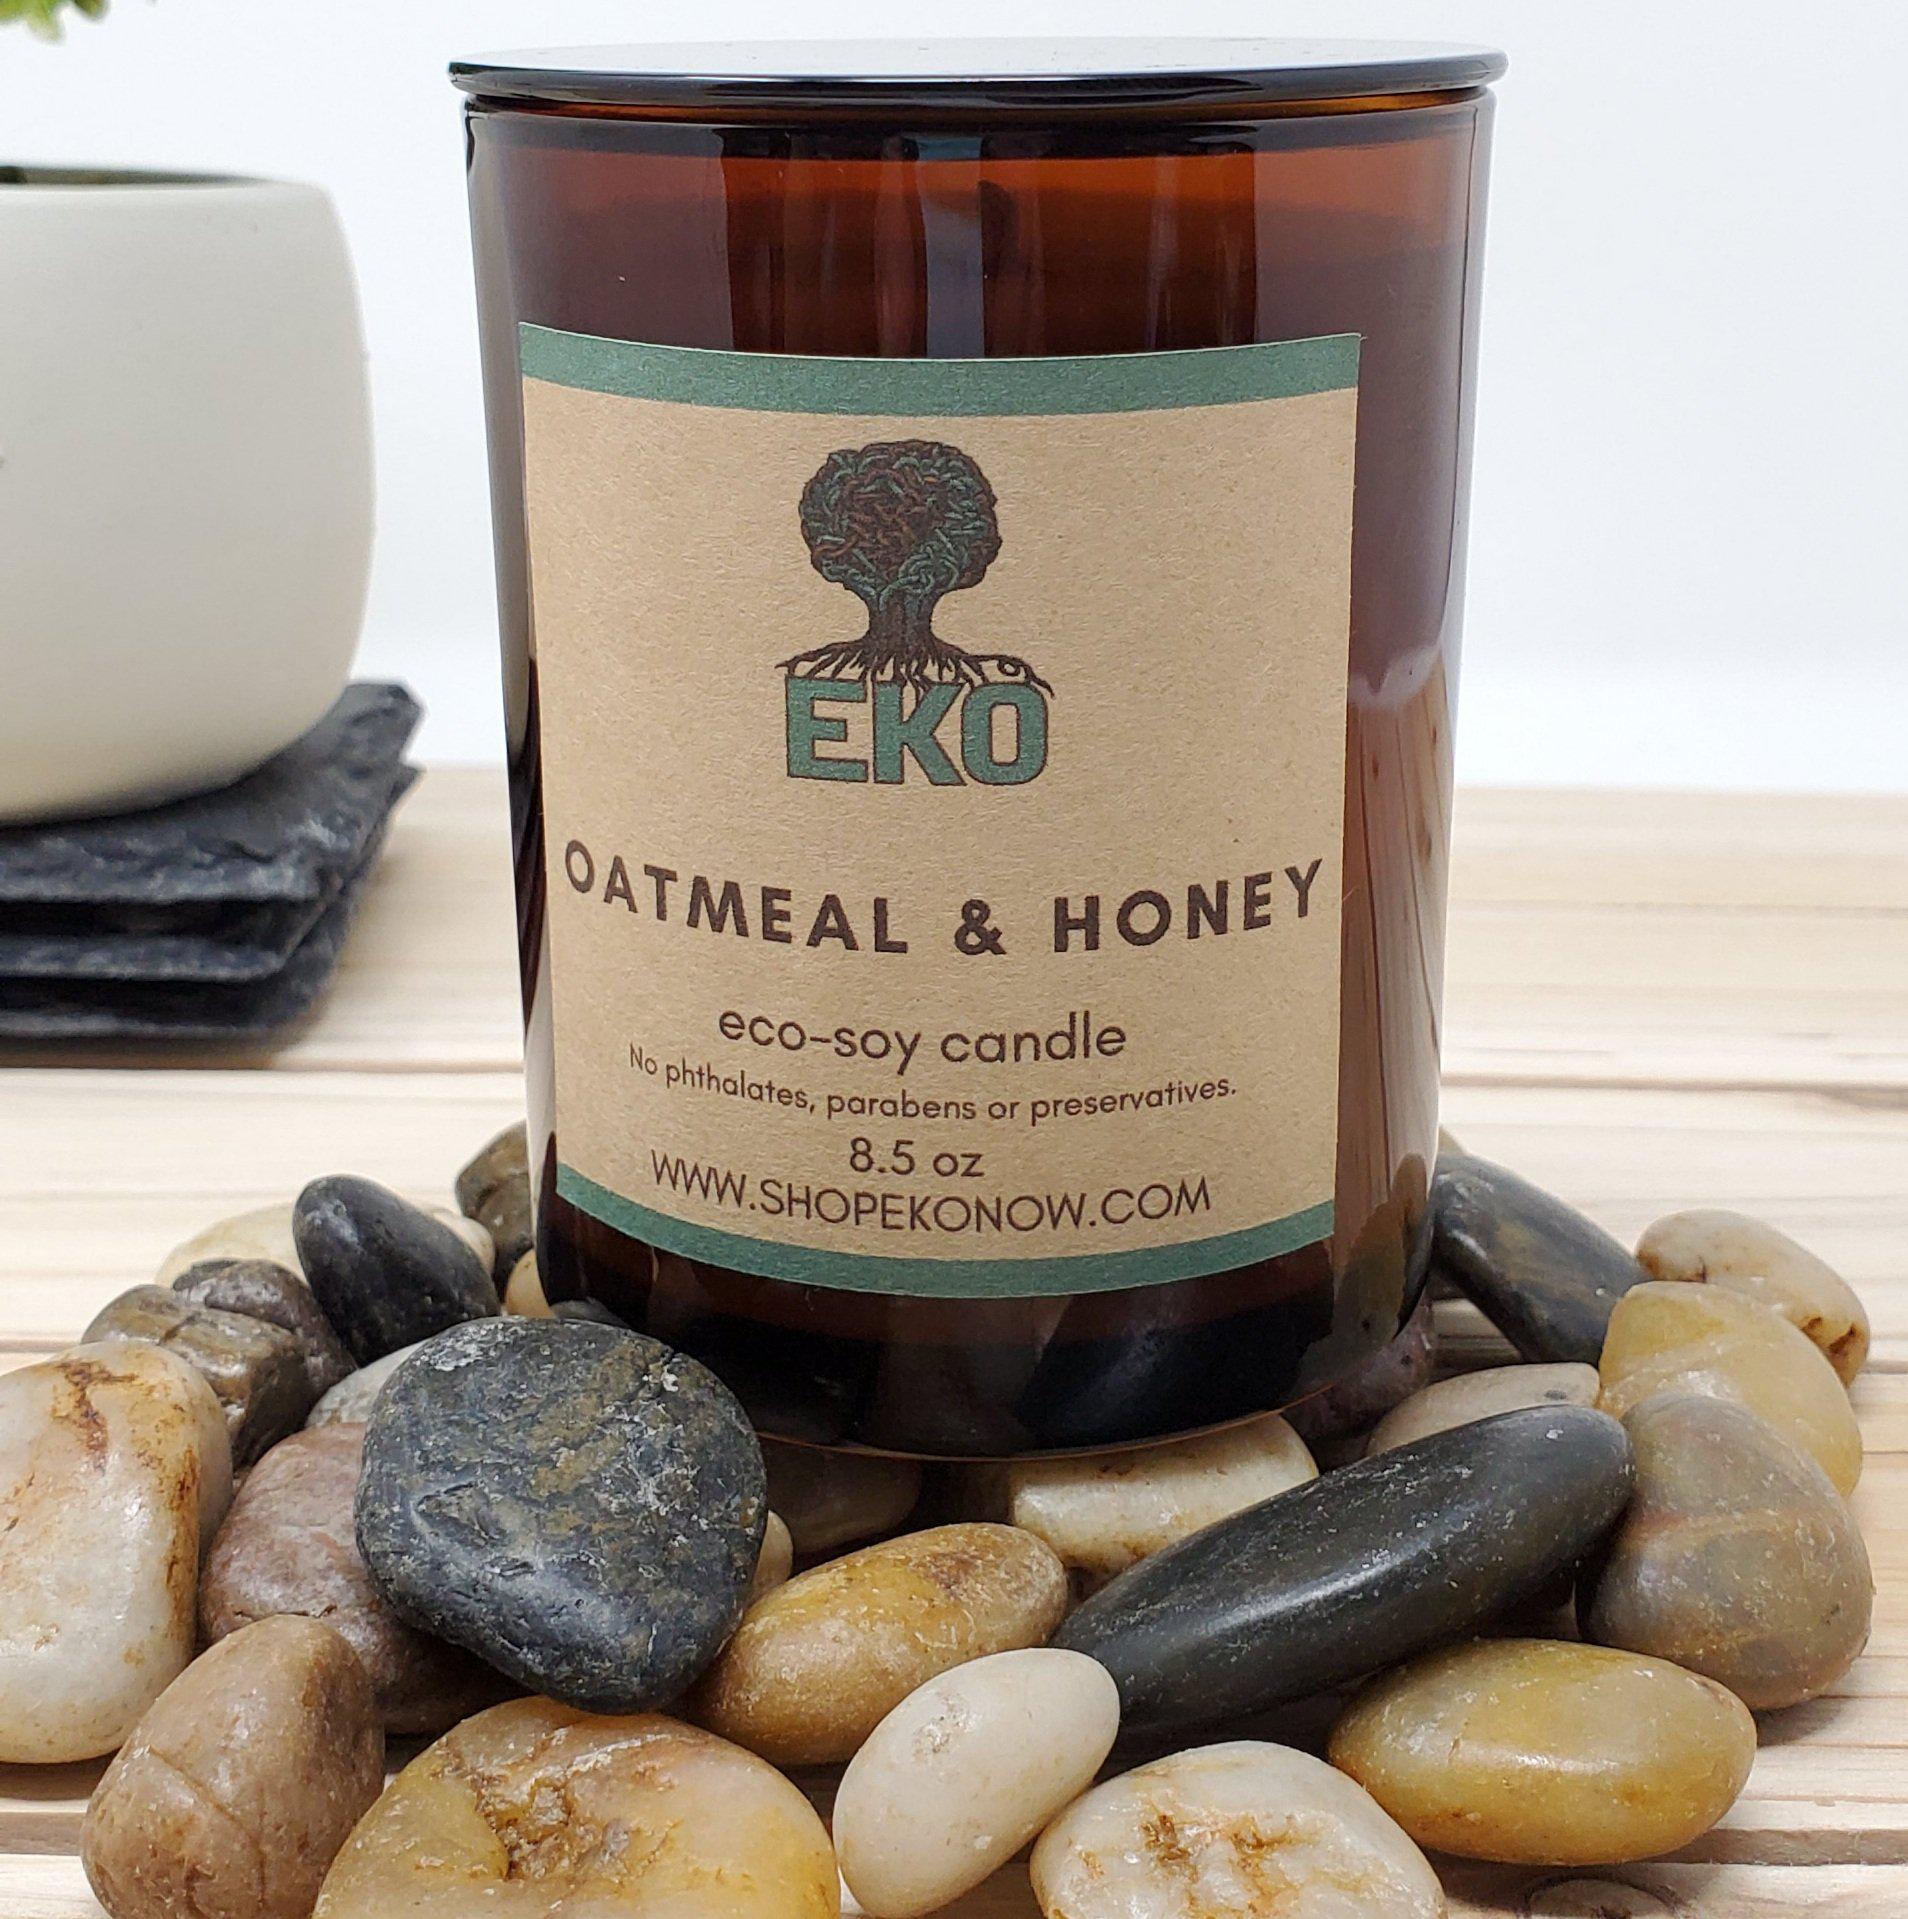 Oatmeal & Honey Eco-Soy Candle